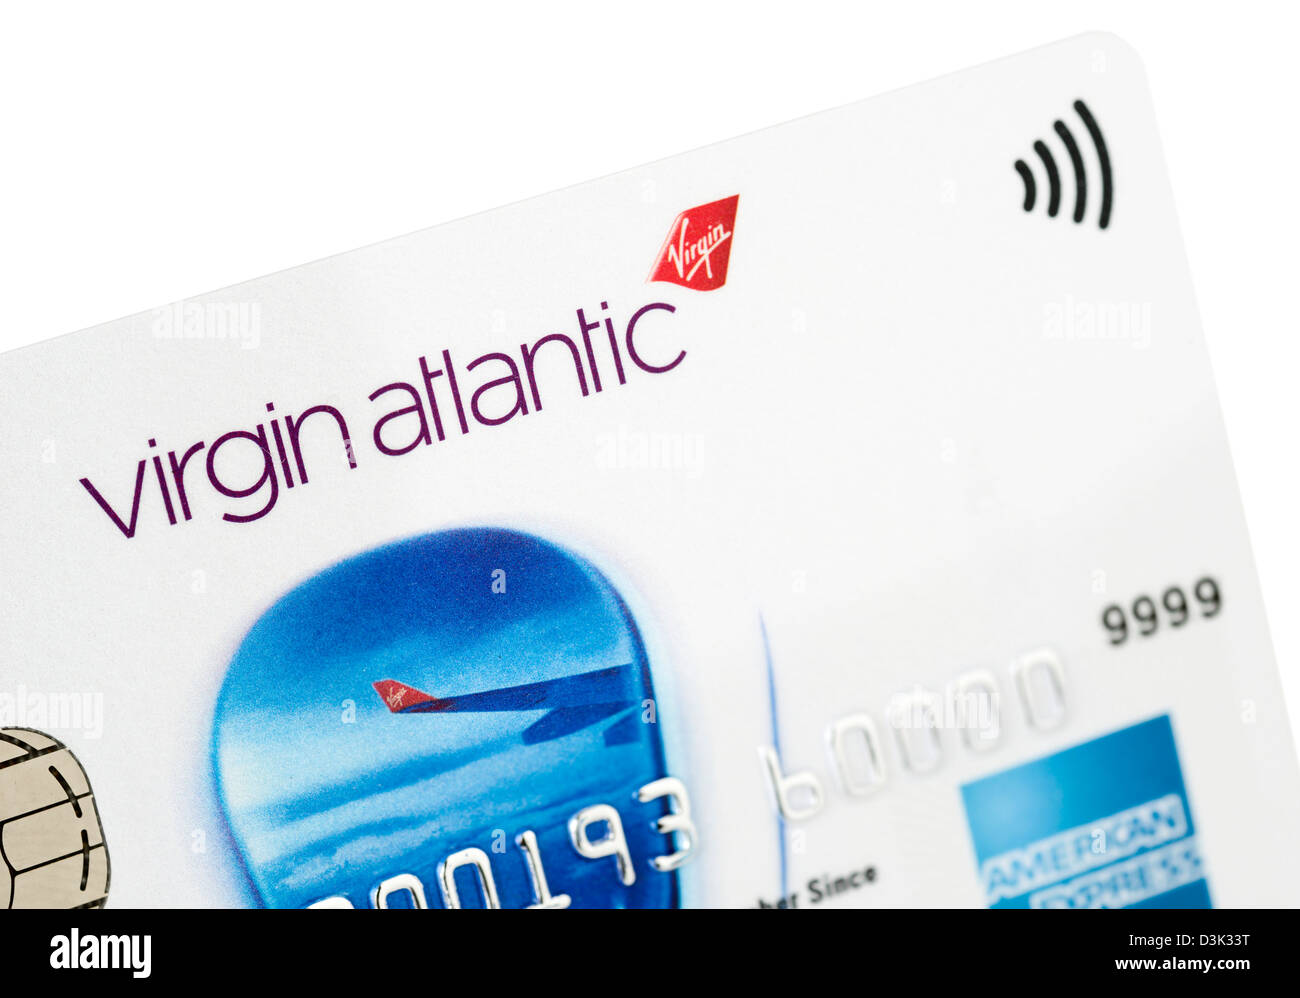 Virgin Atlantic marque Airwasy carte de crédit American Express Banque D'Images